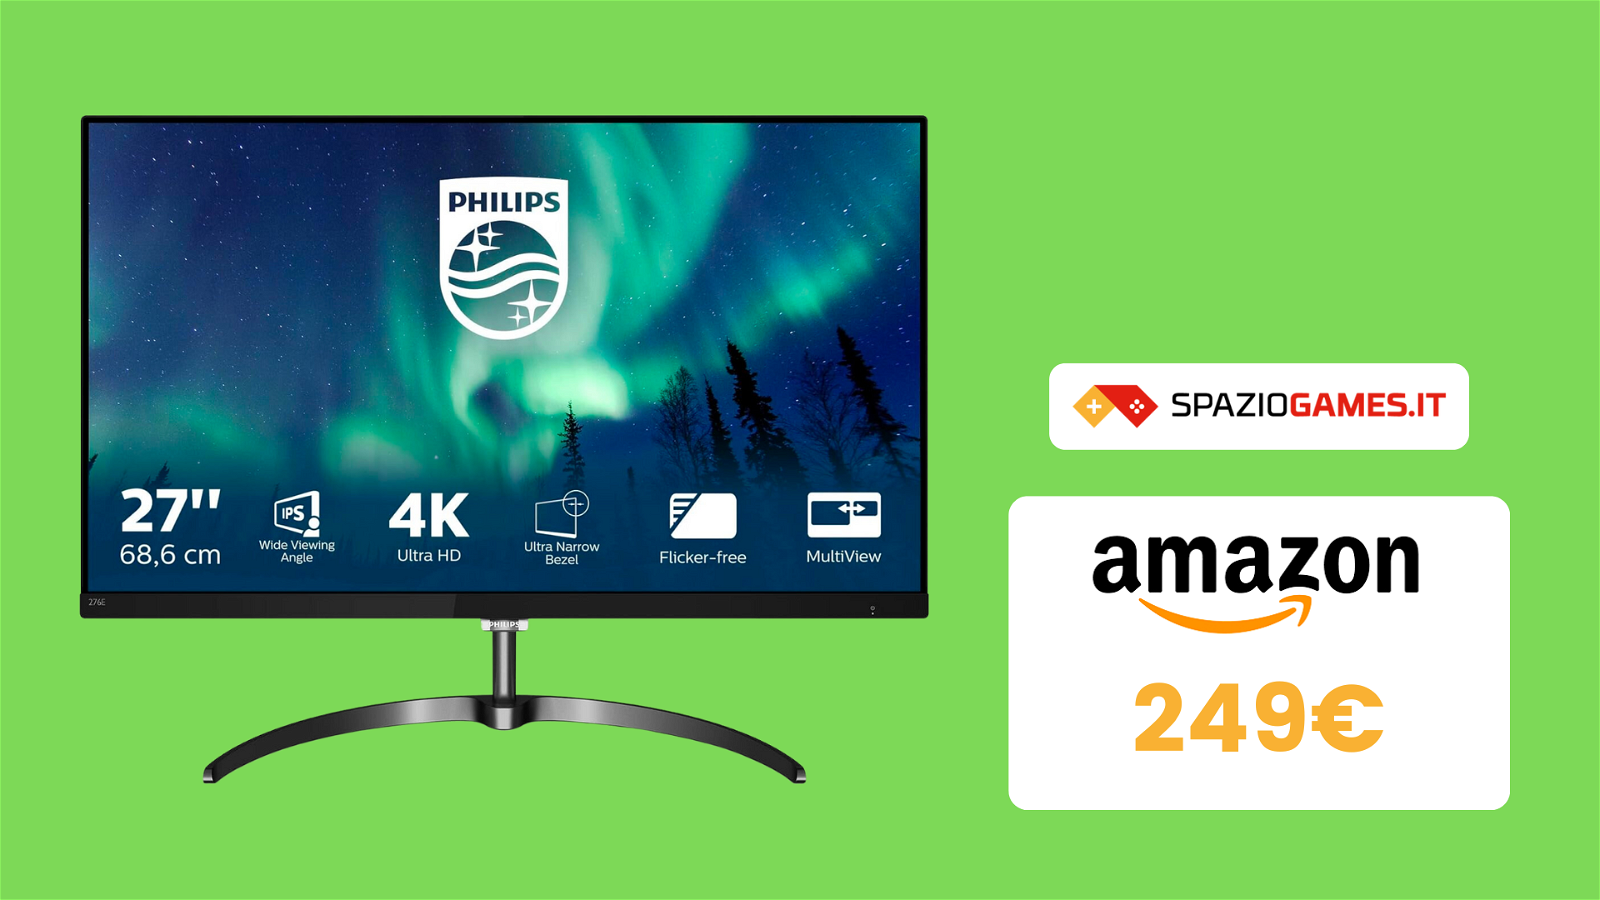 Monitor Philips in 4K ora a un PREZZO TOP! - SpazioGames